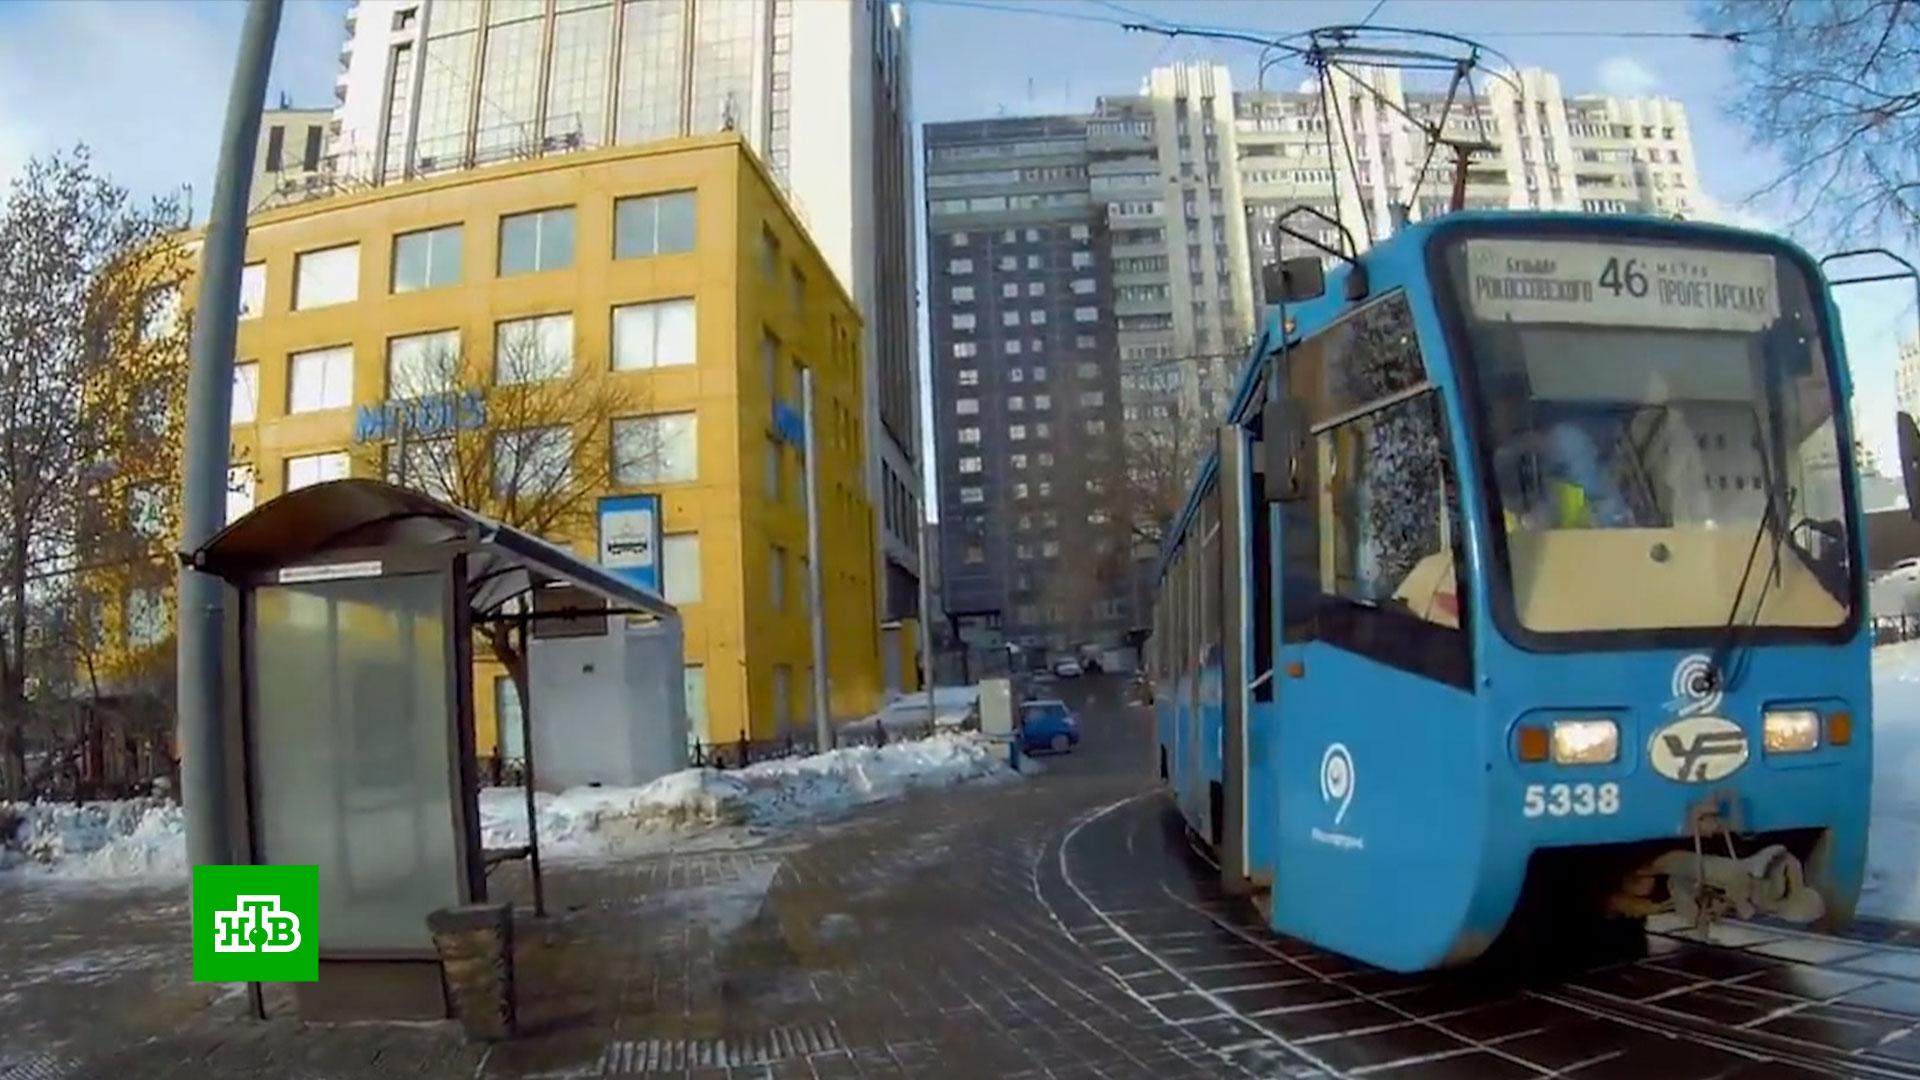 двухэтажный трамвай в москве